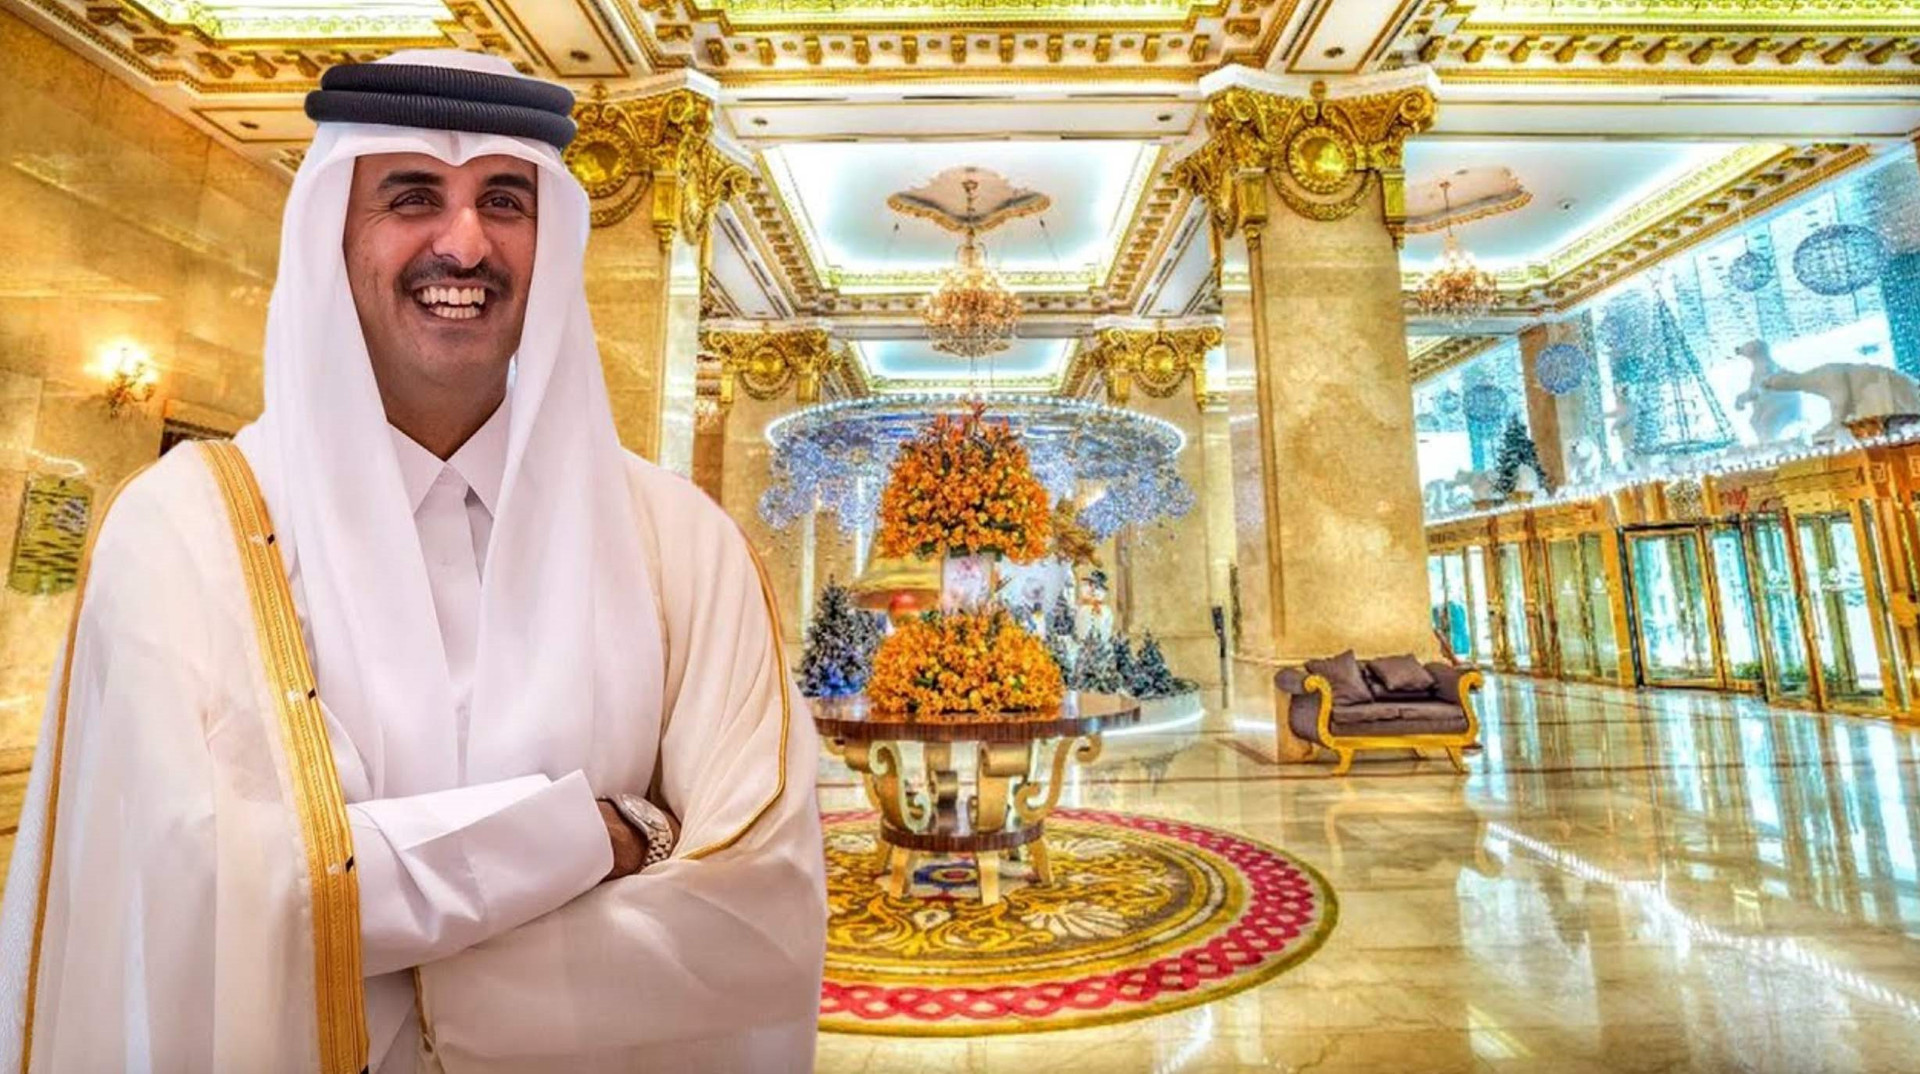 'Cận cảnh' cách Hoàng gia Qatar tiêu 300 tỷ đô: Xây cung điện dát vàng, đầu tư bất động sản khắp thế giới, nắm giữ cổ phần trong những doanh nghiệp hàng đầu 